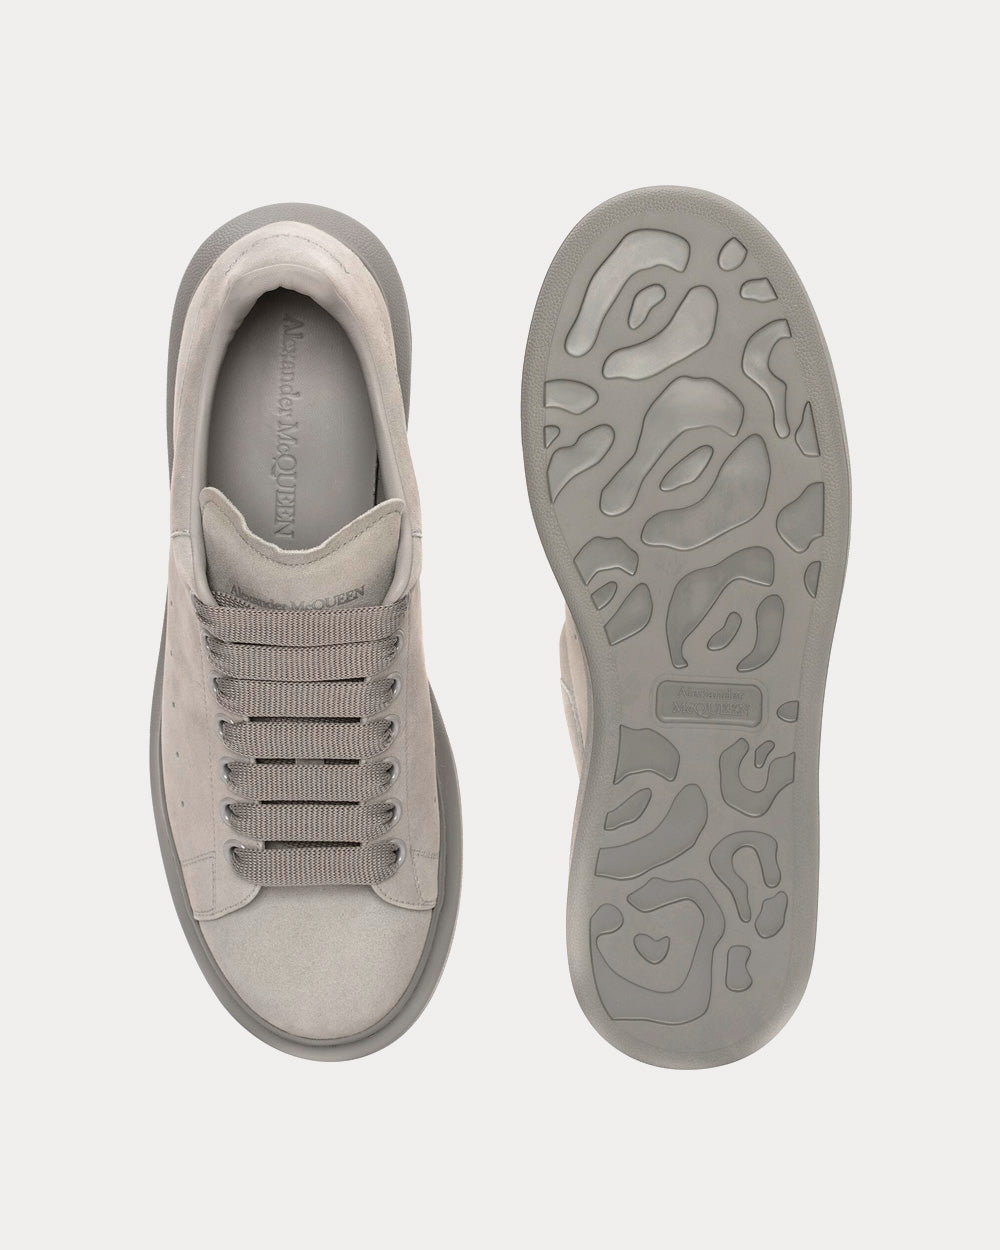 Alexander McQueen - Oversized Suede Grey Low Top Sneakers